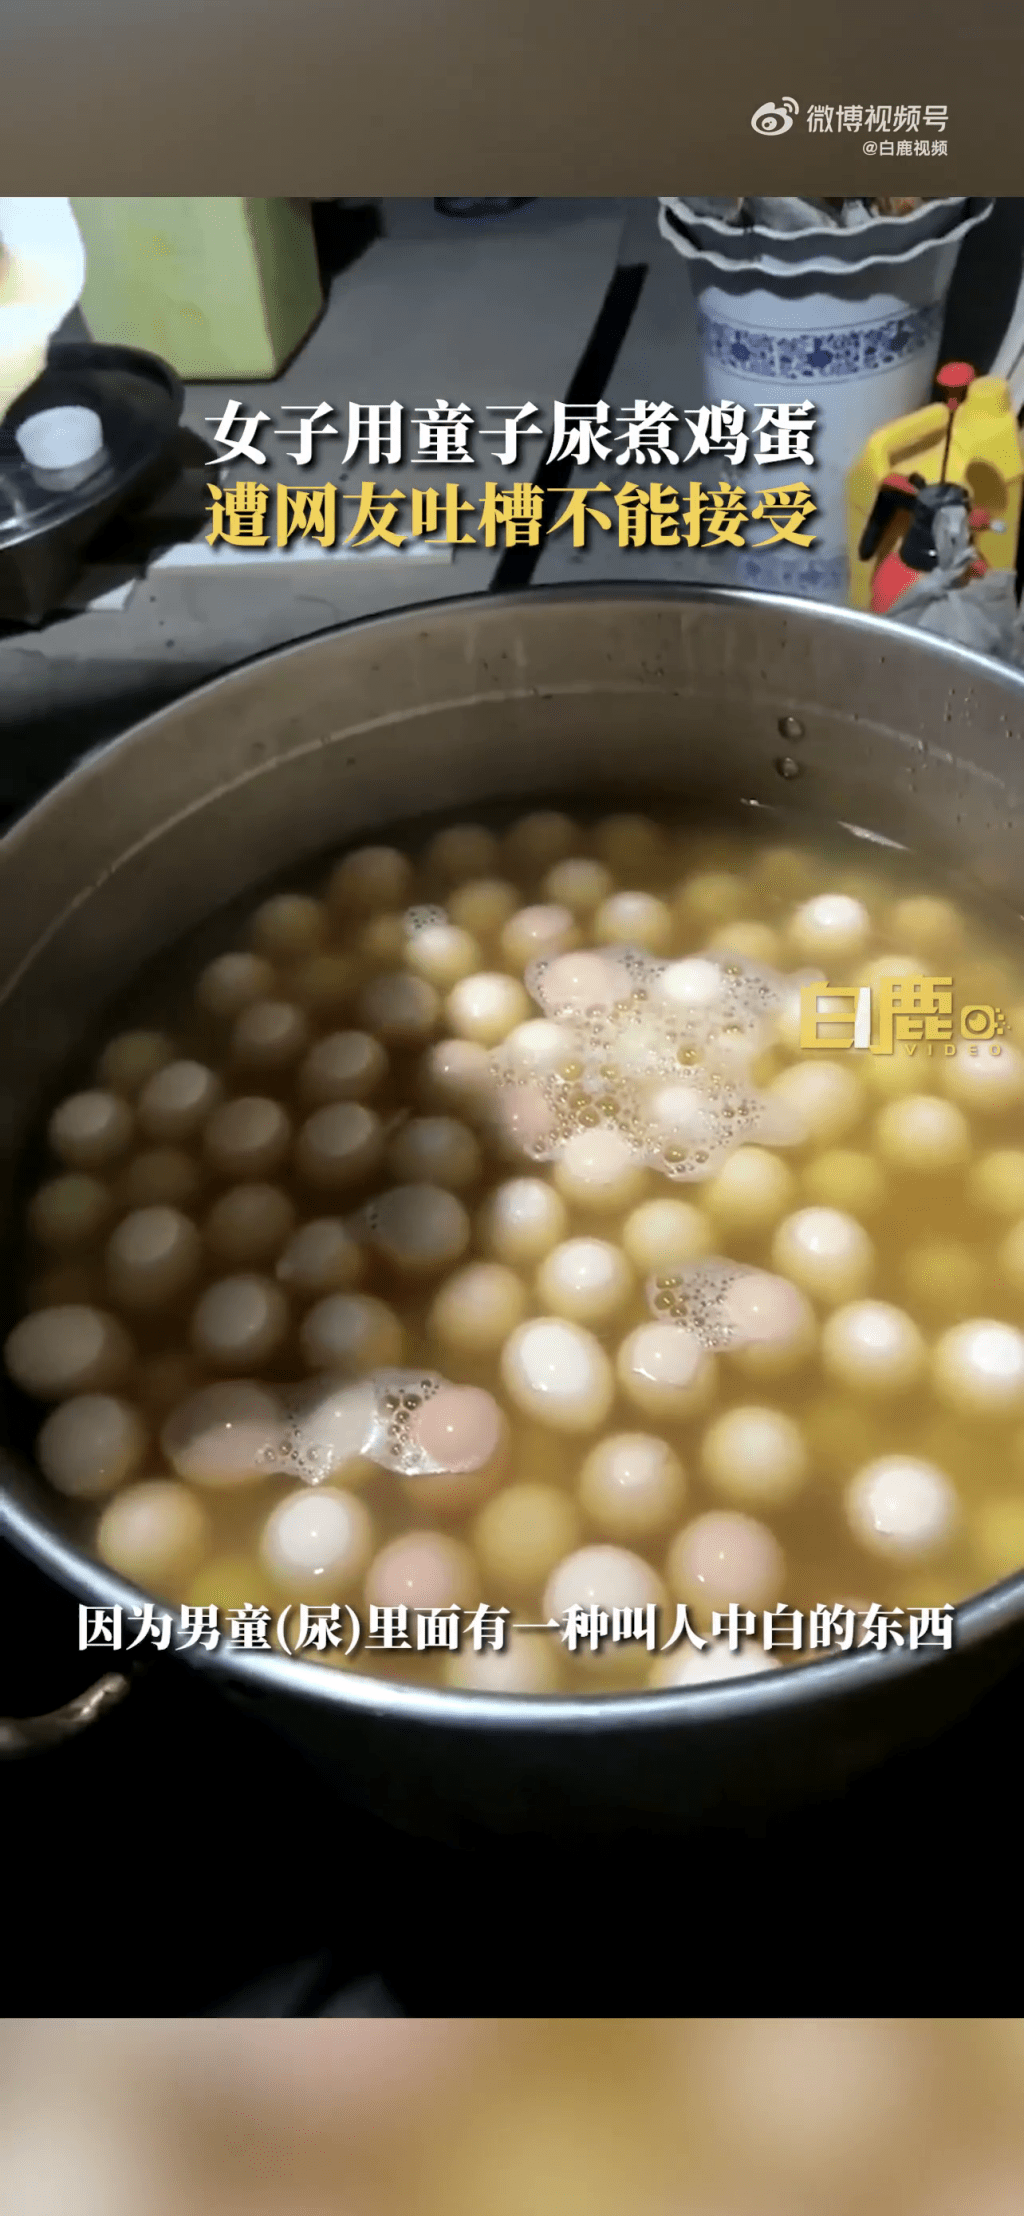 浙江東陽一名女子發布影片稱用童子尿煮雞蛋並出售，引起廣泛關注。